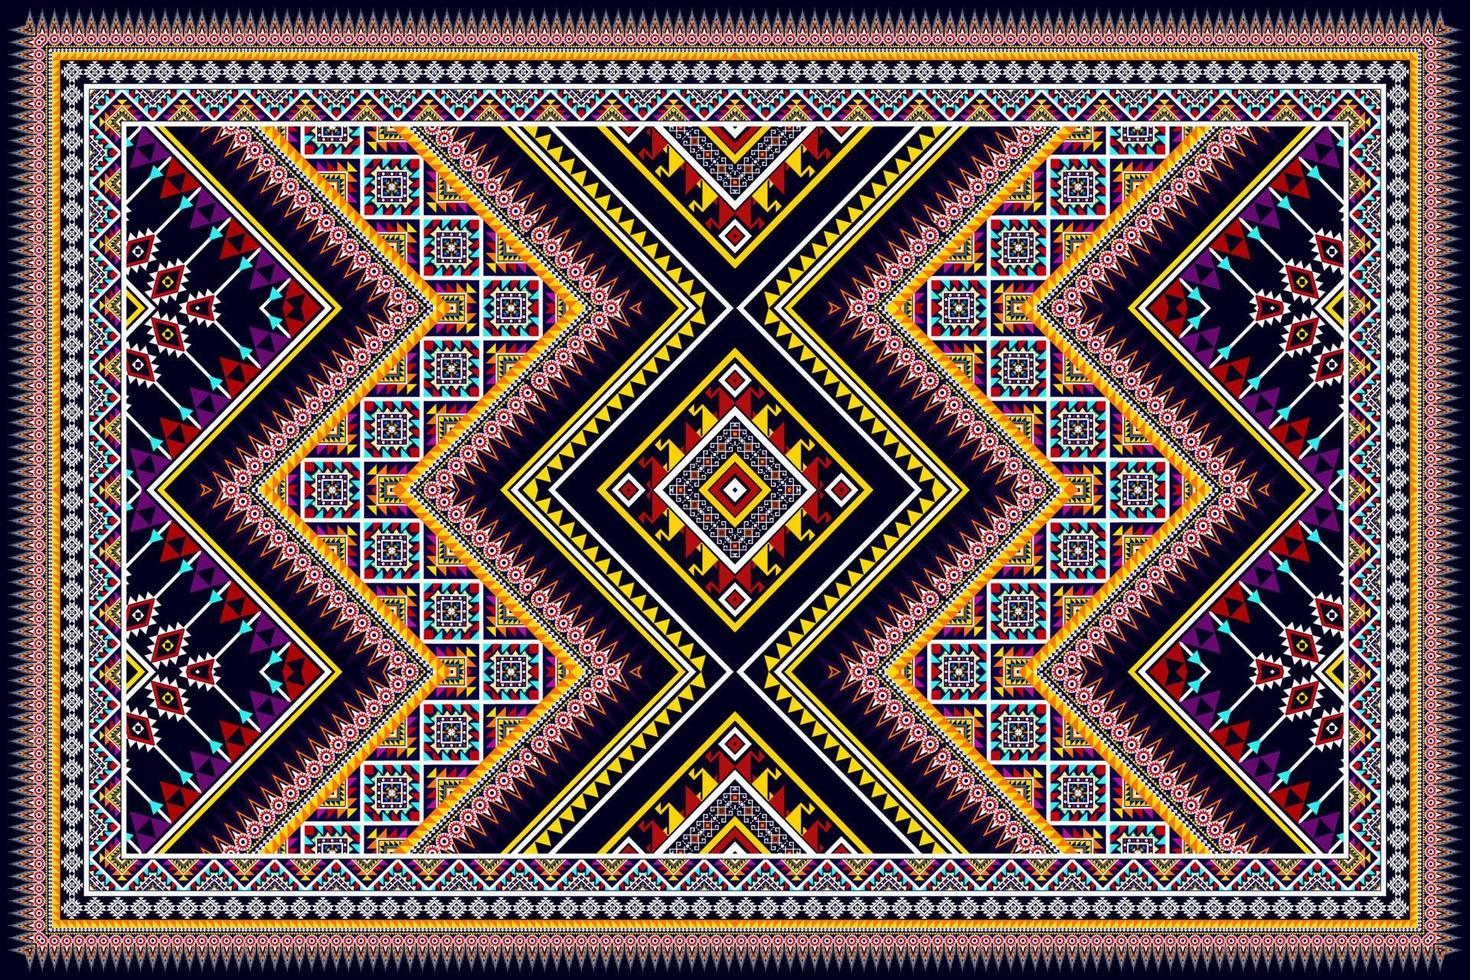 ikat étnico diseño de patrones sin fisuras abstracto geométrico azteca tela alfombra ornamento chevron textil decoración papel tapiz. vector de bordado tradicional indio africano americano tribal pavo